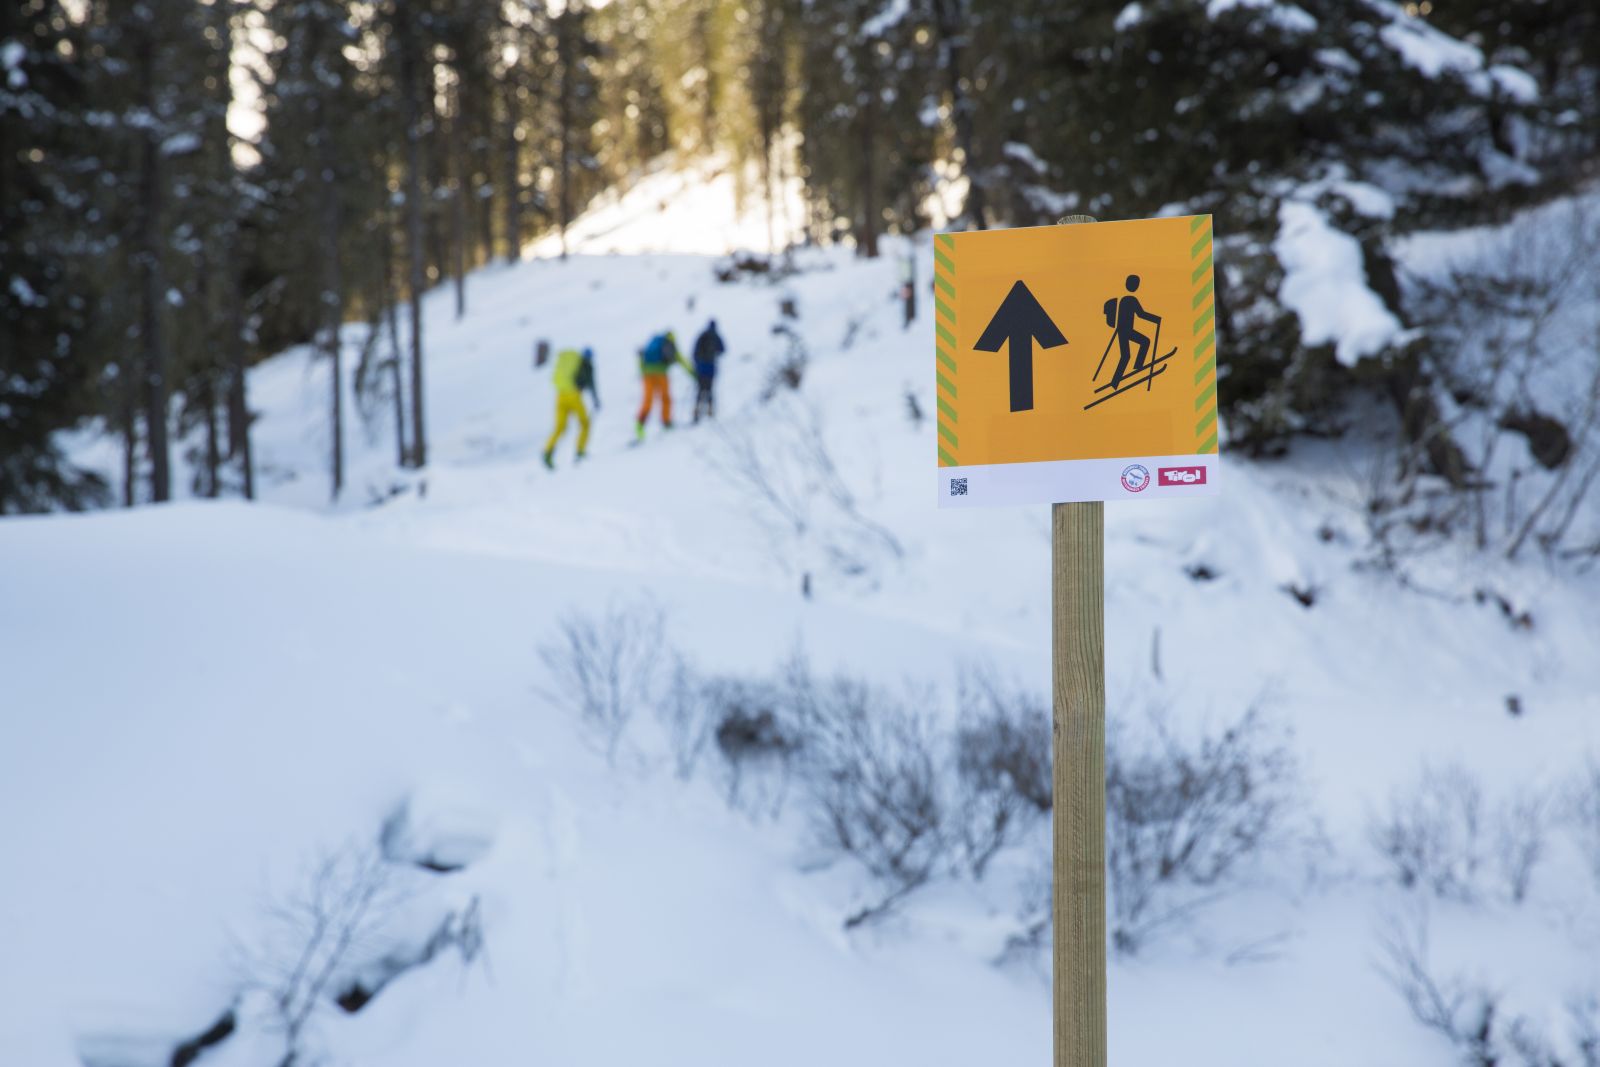 Aufstiegsschild des Skitourenleitsystems, drei Skitourengeher im Hintergrund